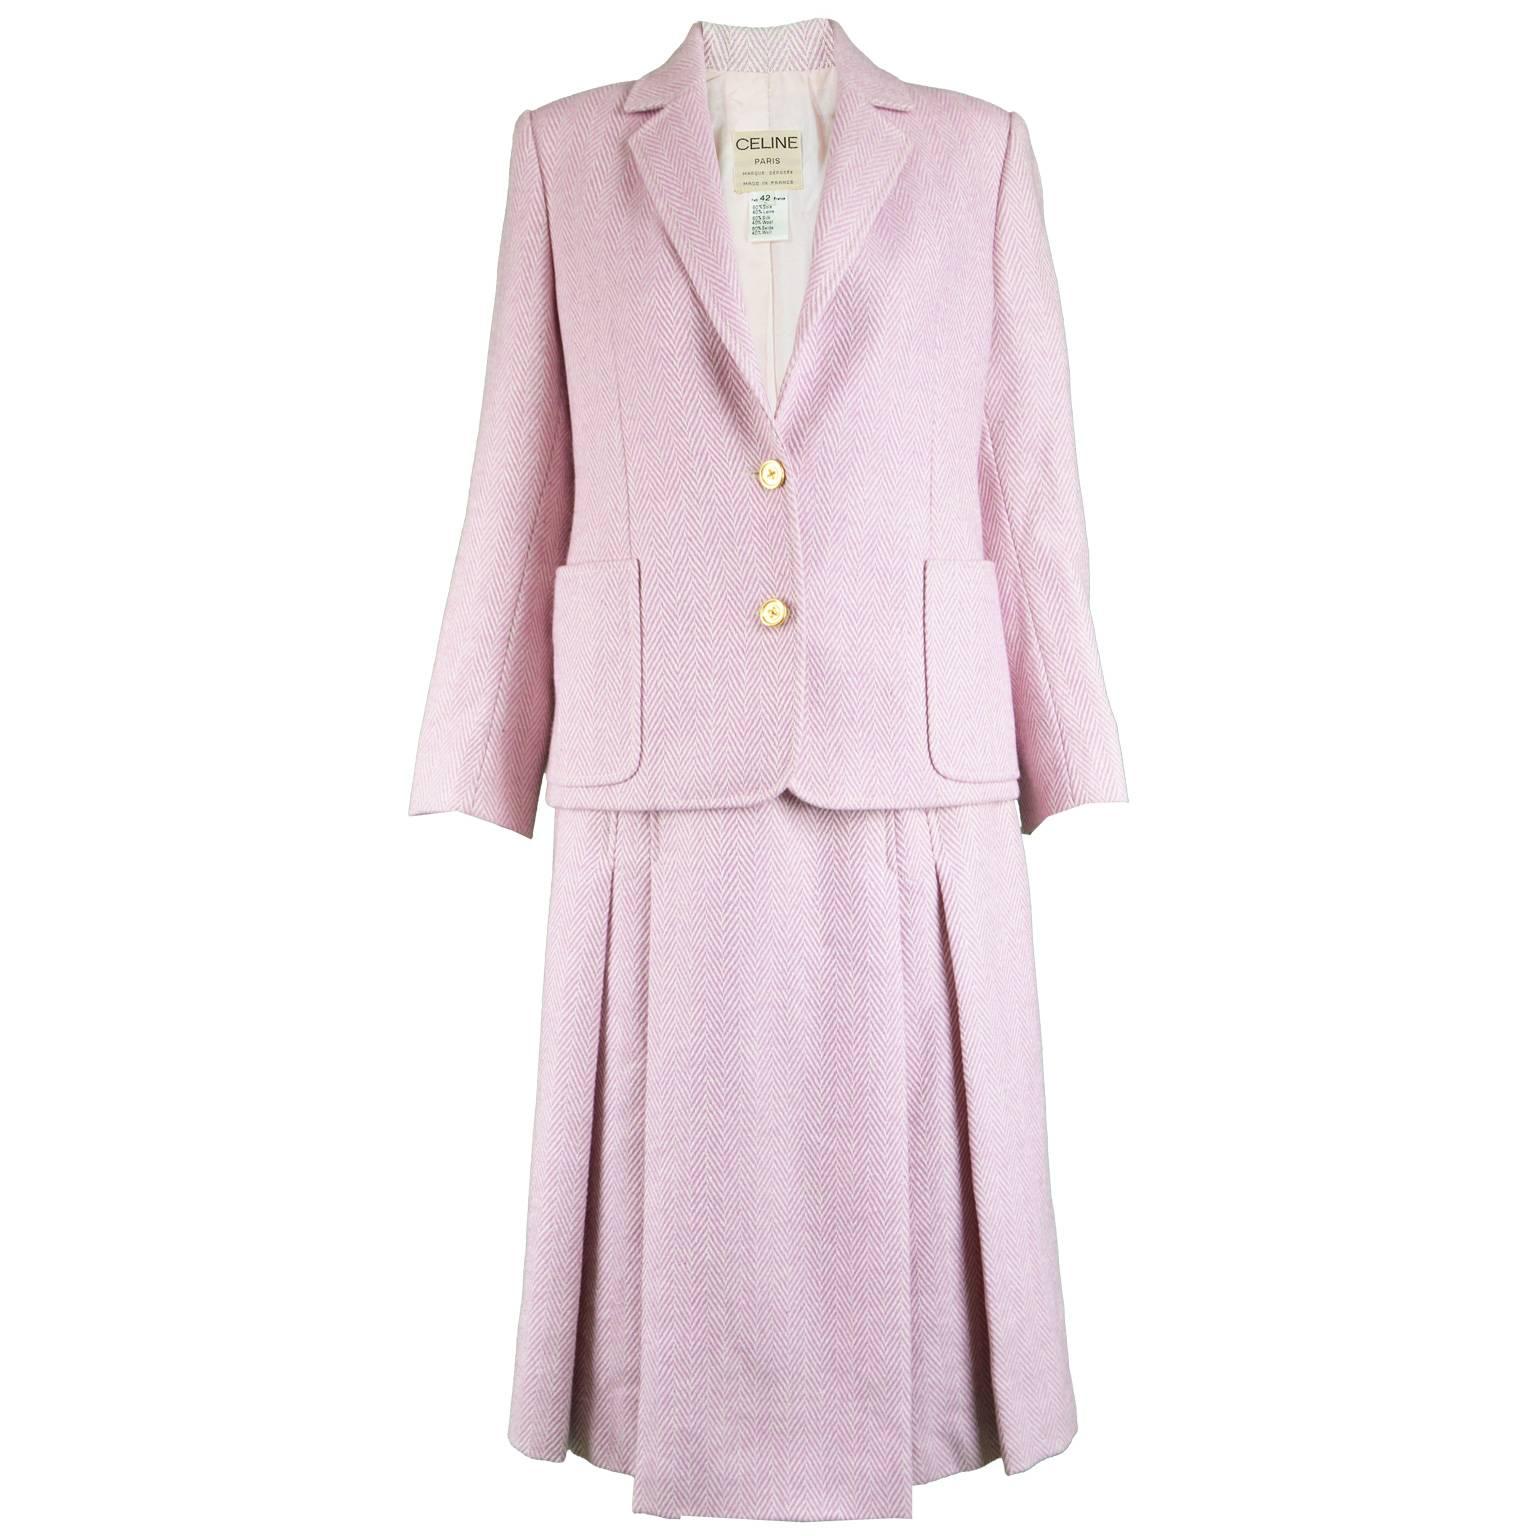 Celine Vintage Pink and White Silk and Wool Herringbone Tweed Skirt Suit, 1980s For Sale